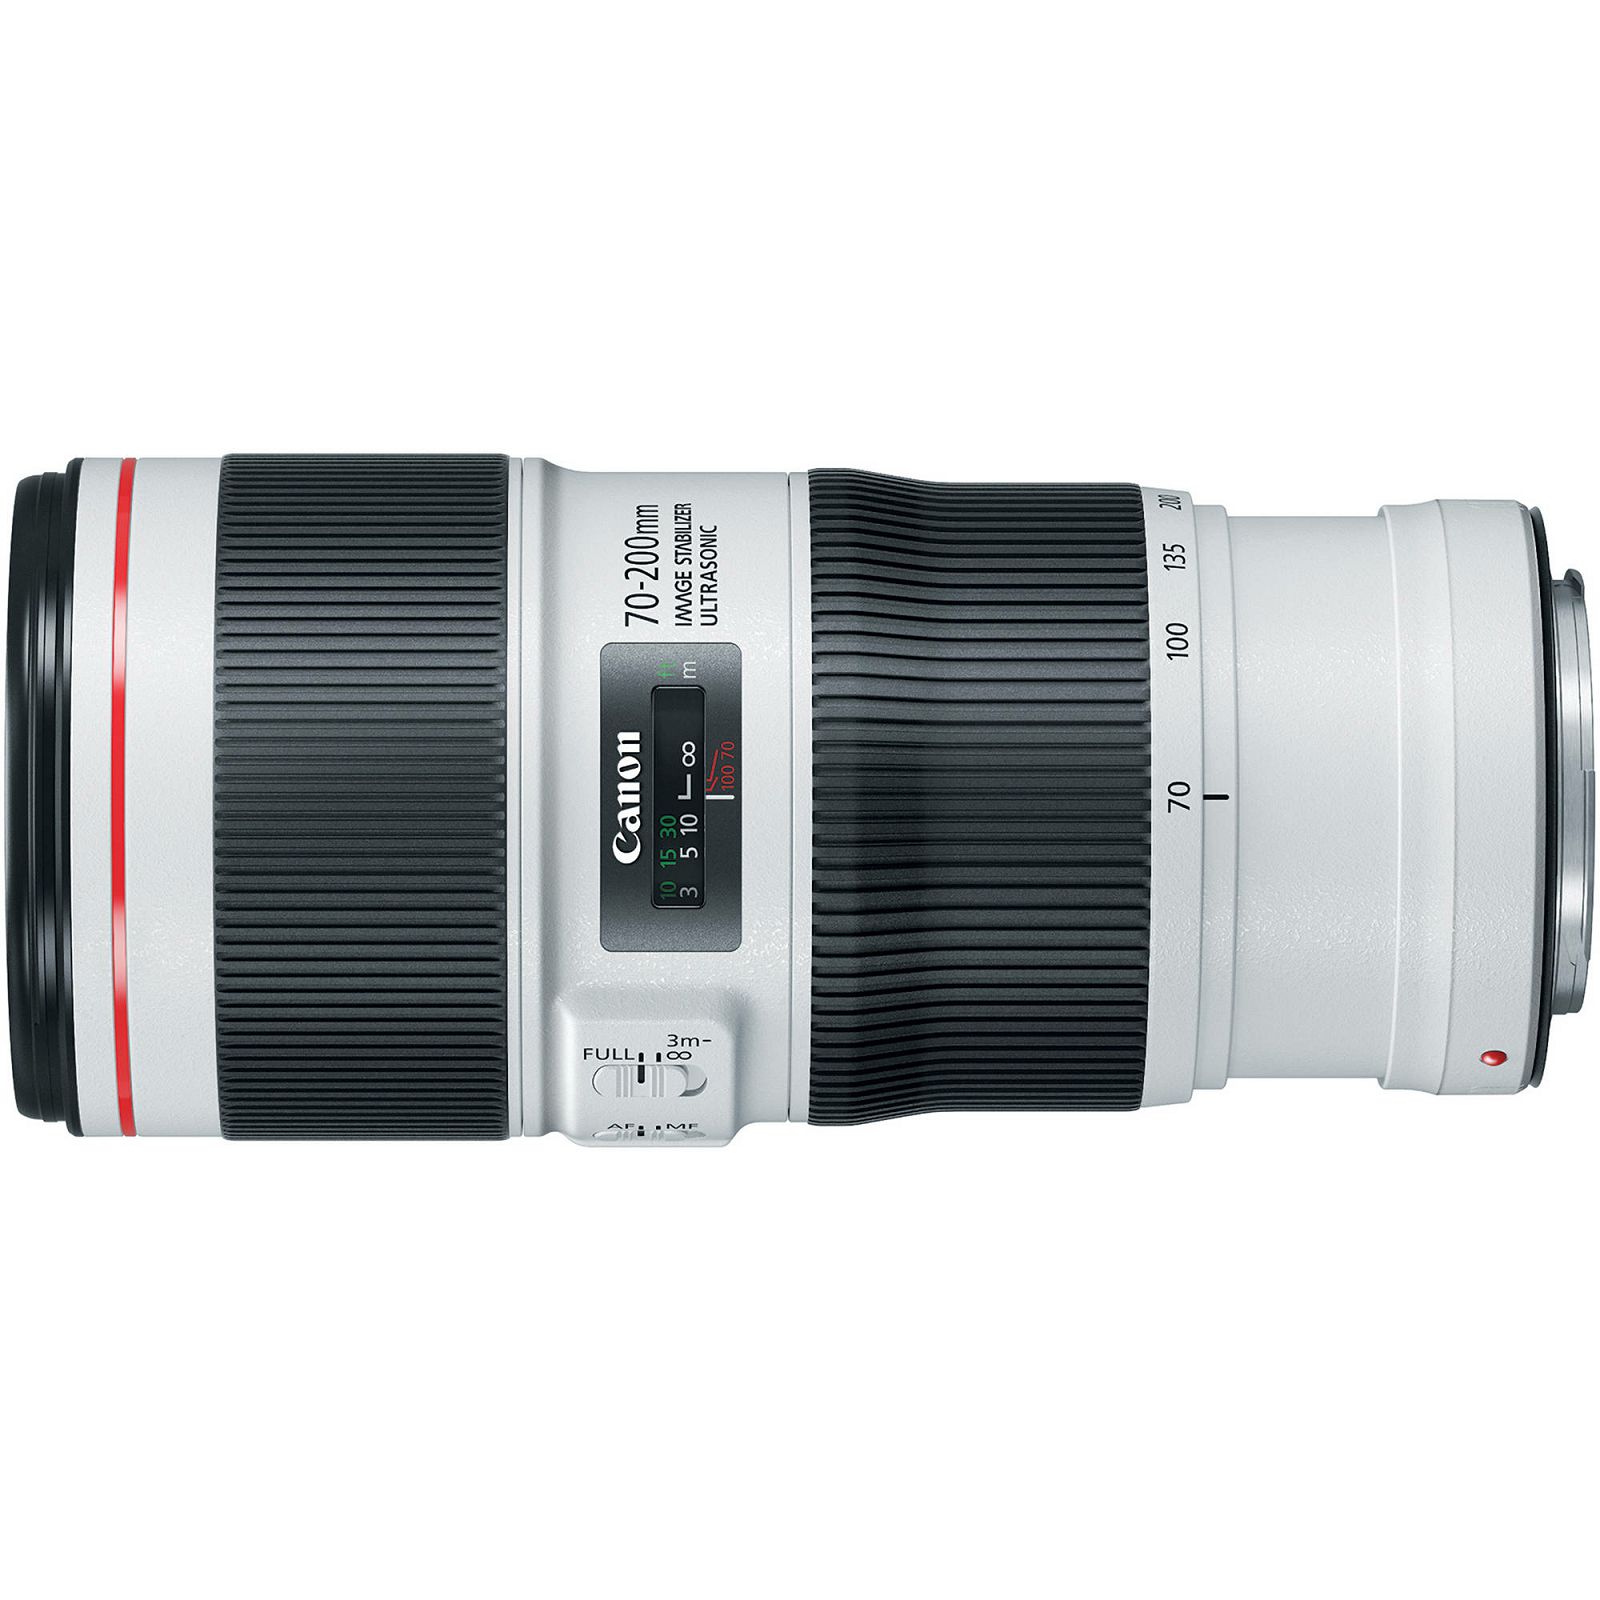 Canon EF 70-200mm f/4 L IS II USM telefoto objektiv zoom lens 70-200 F/4.0 L f/4L F4 1:4,0L (2309C005AA) 